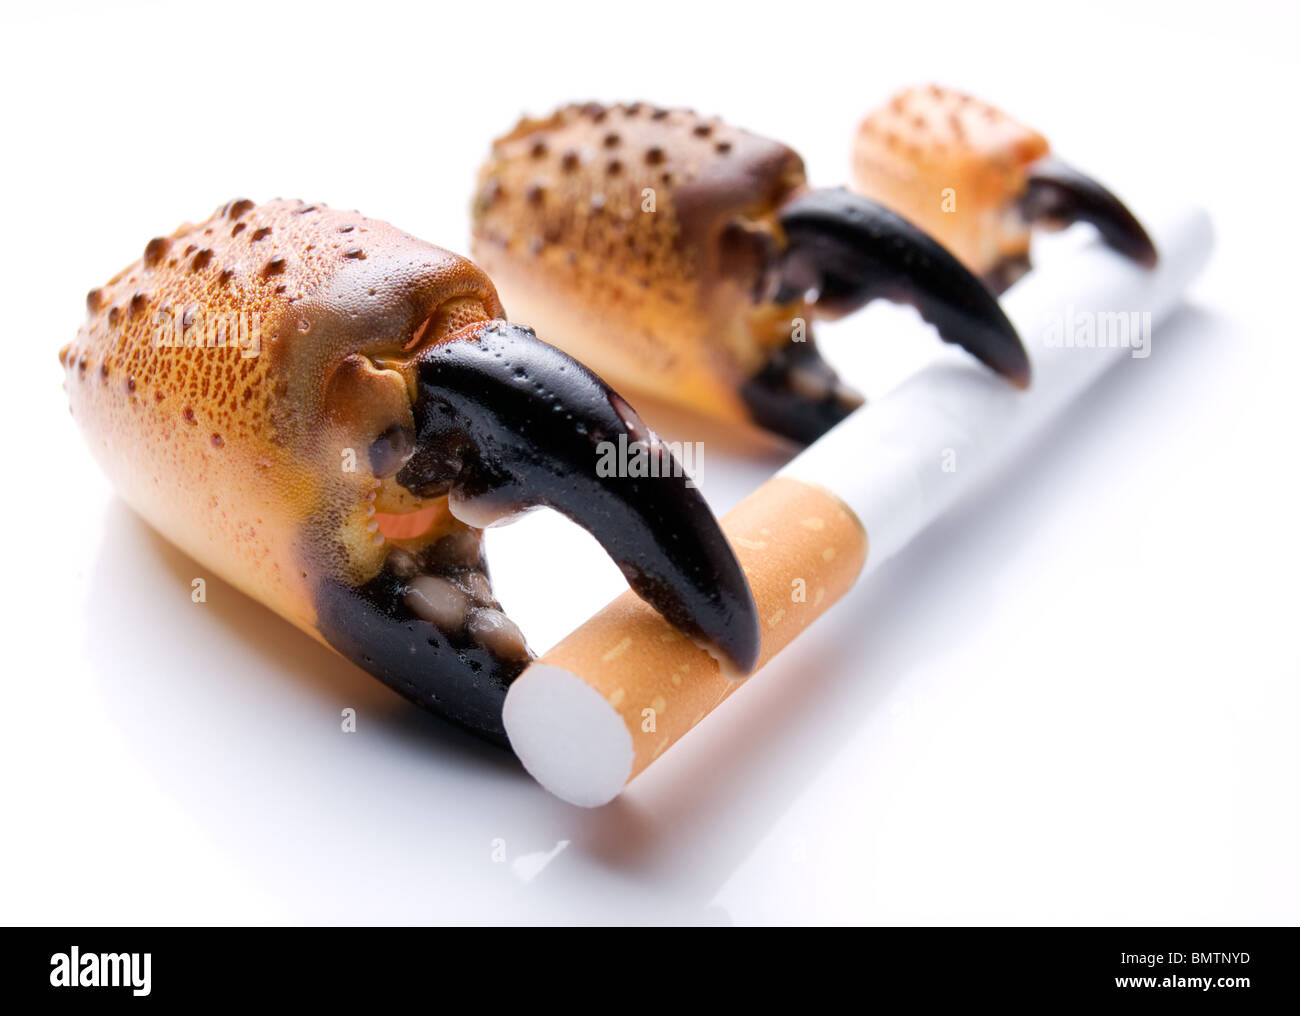 Die Metapher über drei Stufen der Entwicklung von Lungenkrebs durch Rauchen. Stockfoto